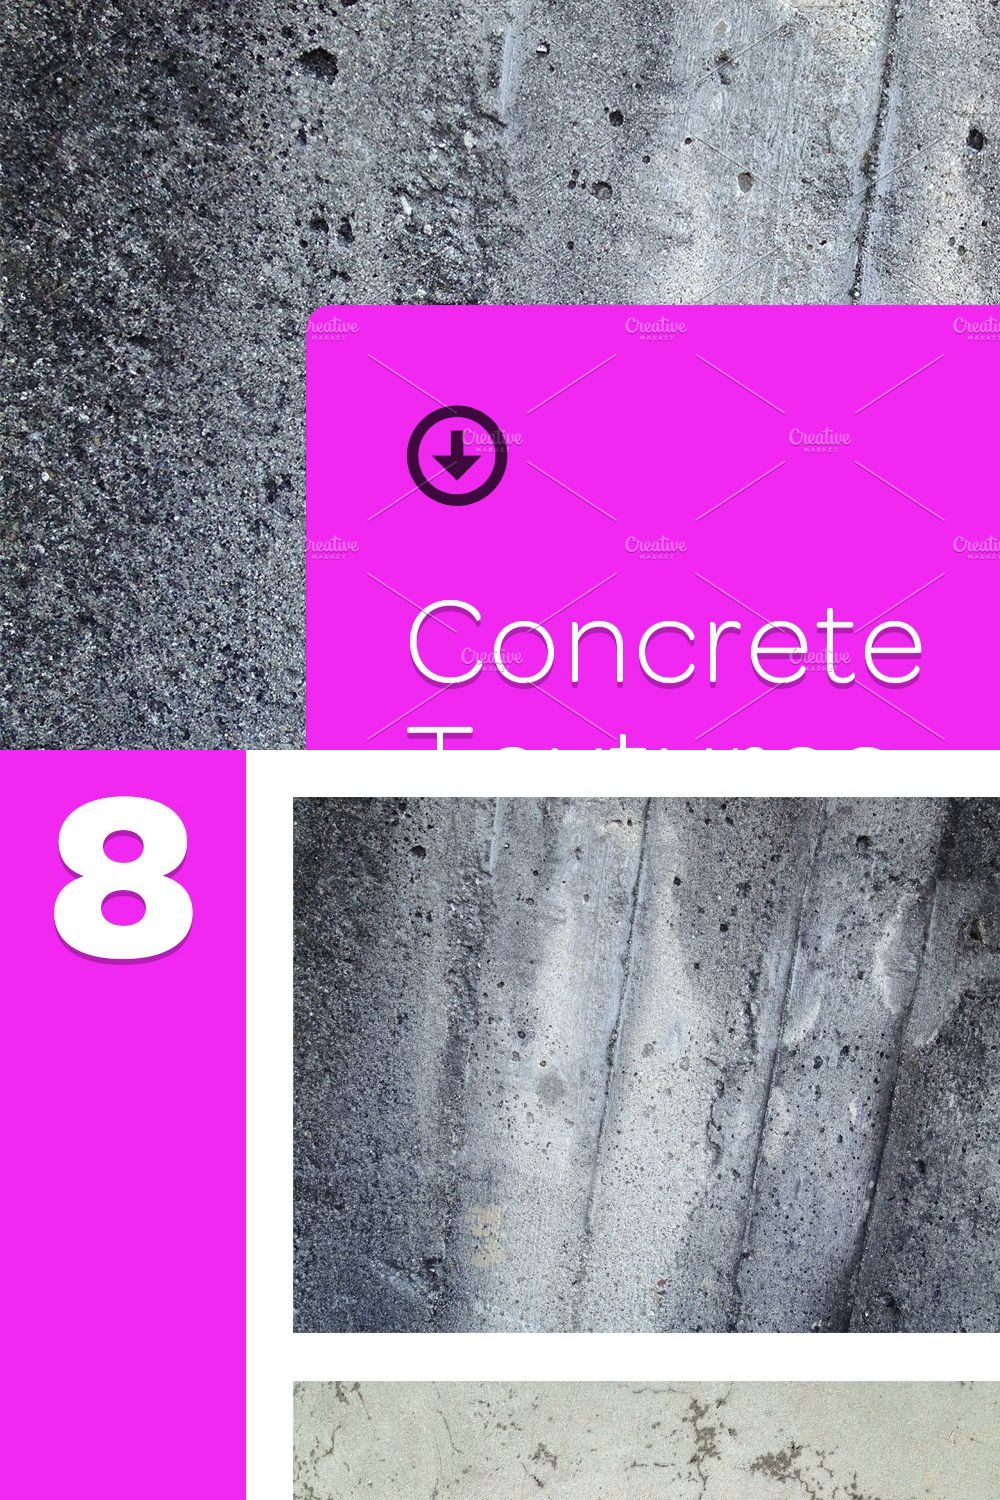 8 Concrete Textures pinterest preview image.